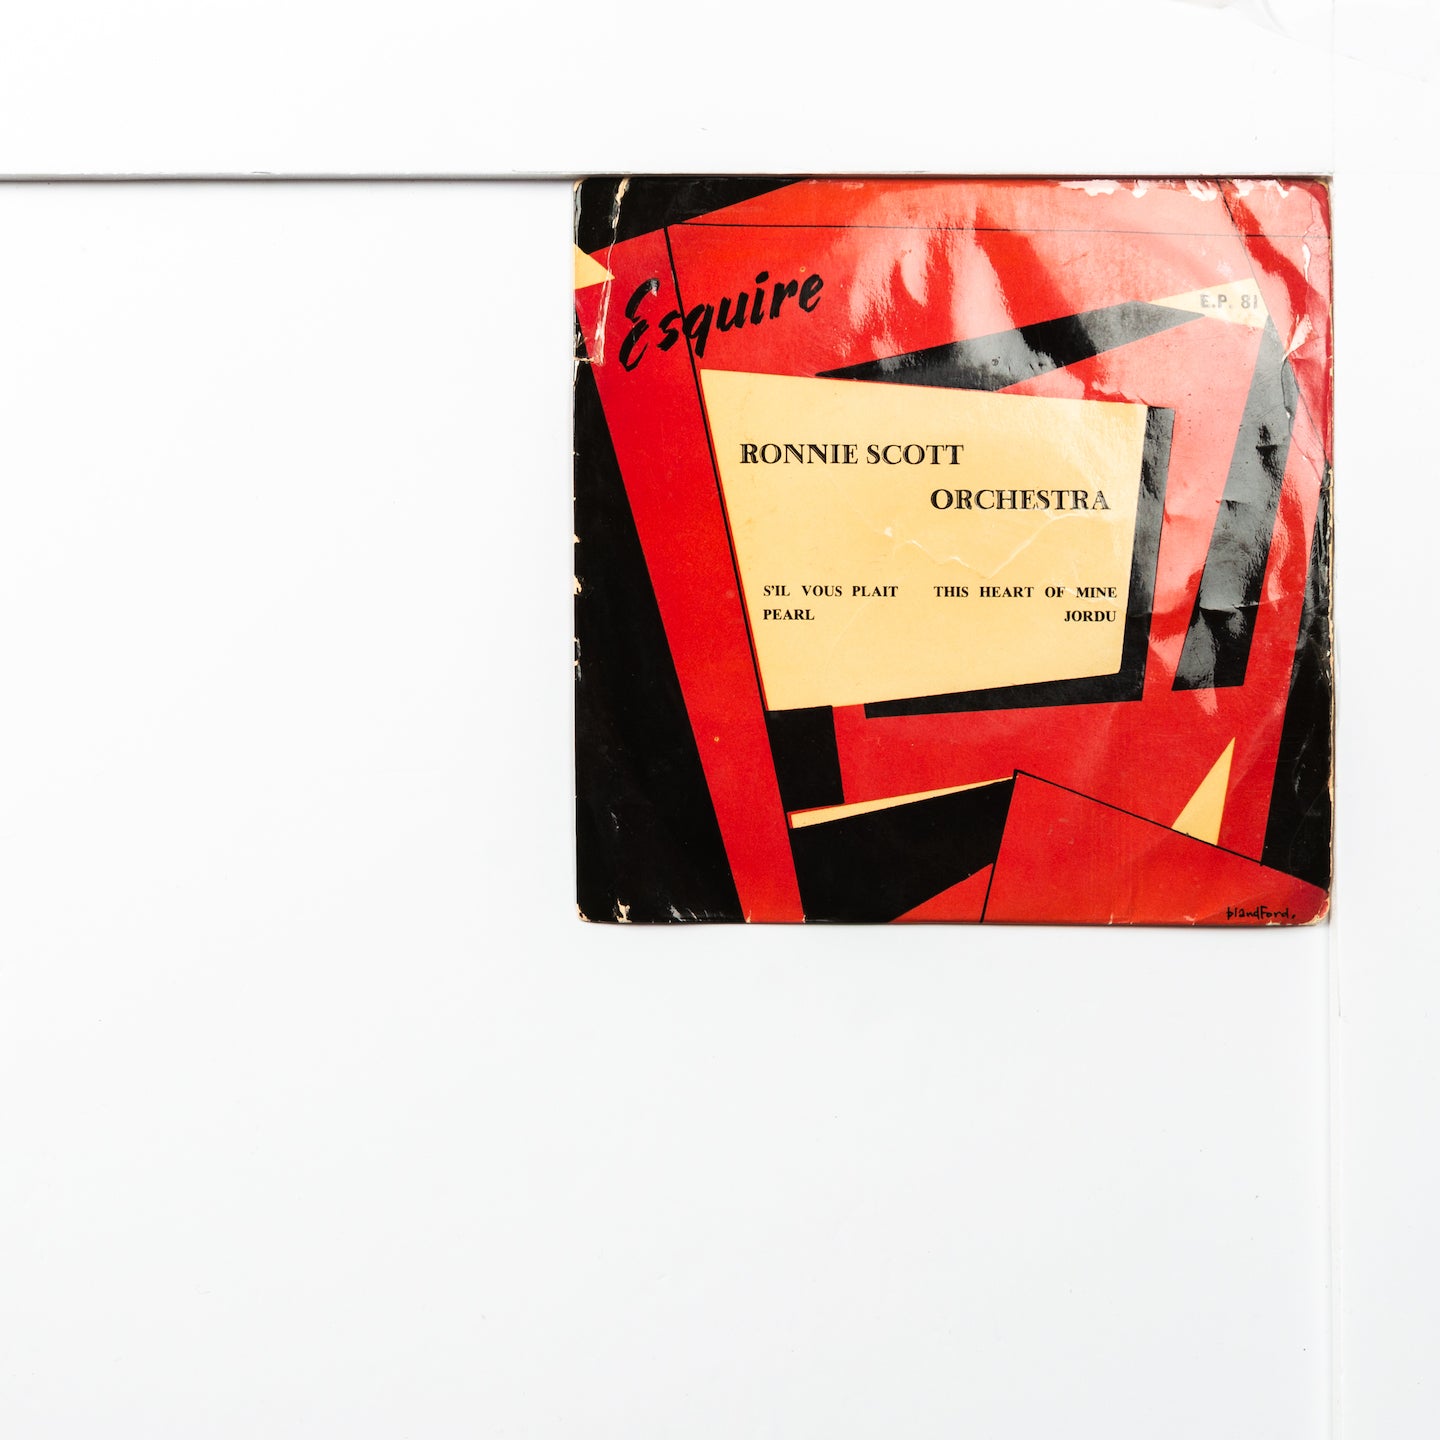 Ronnie Scott Esquire EP81 Jordu (2.50)